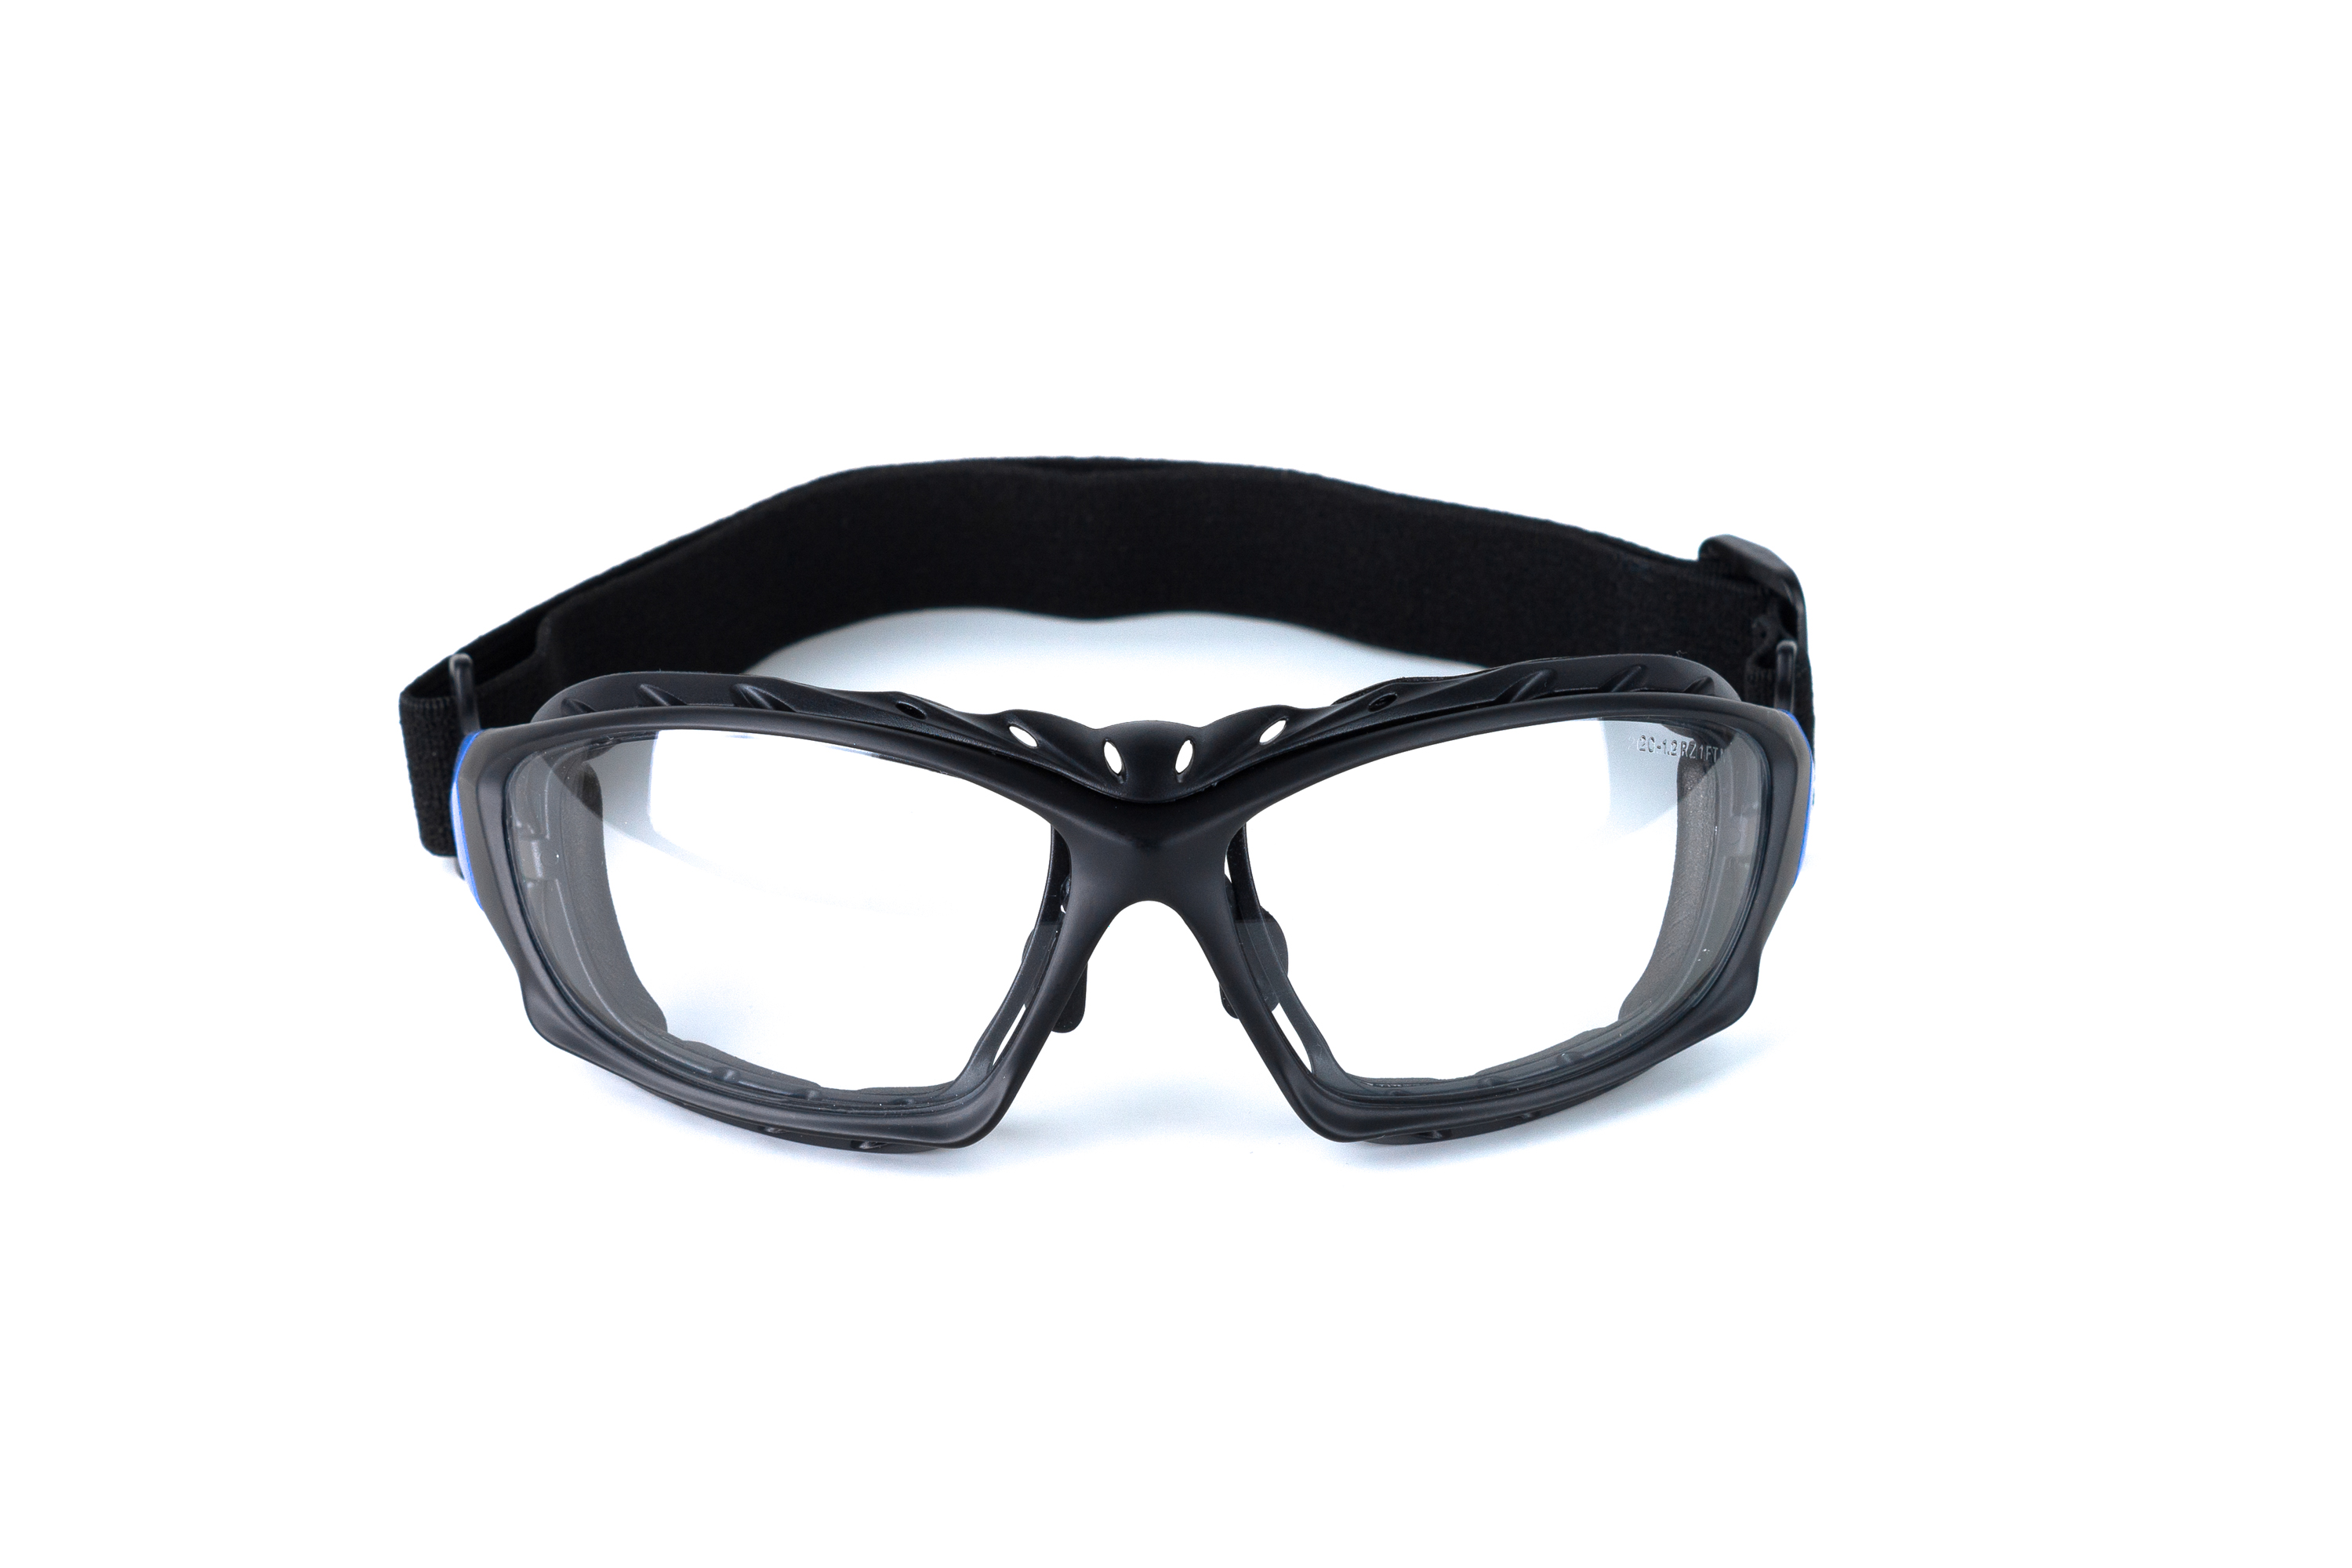 ARCTIC north (2С-1,2 PC) очки защитные открытые